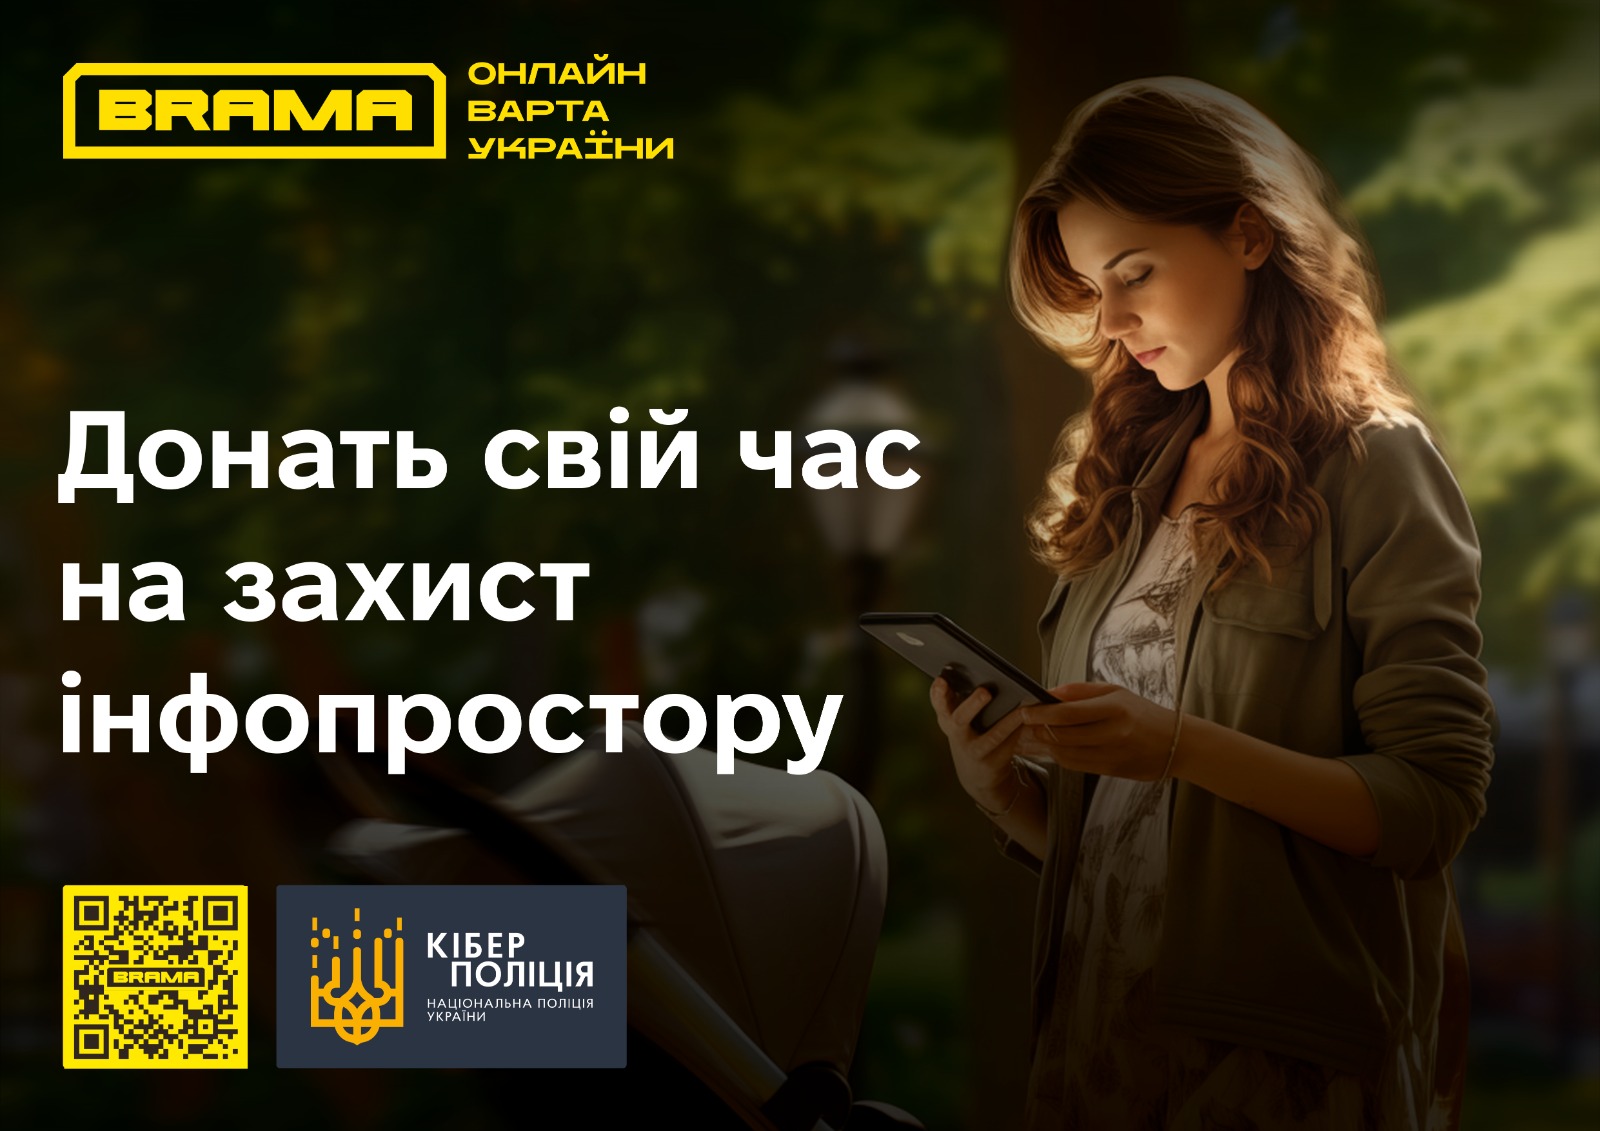 В Україні діятиме новий покращений проєкт із кібербезпеки BRAMA (БРАМА)